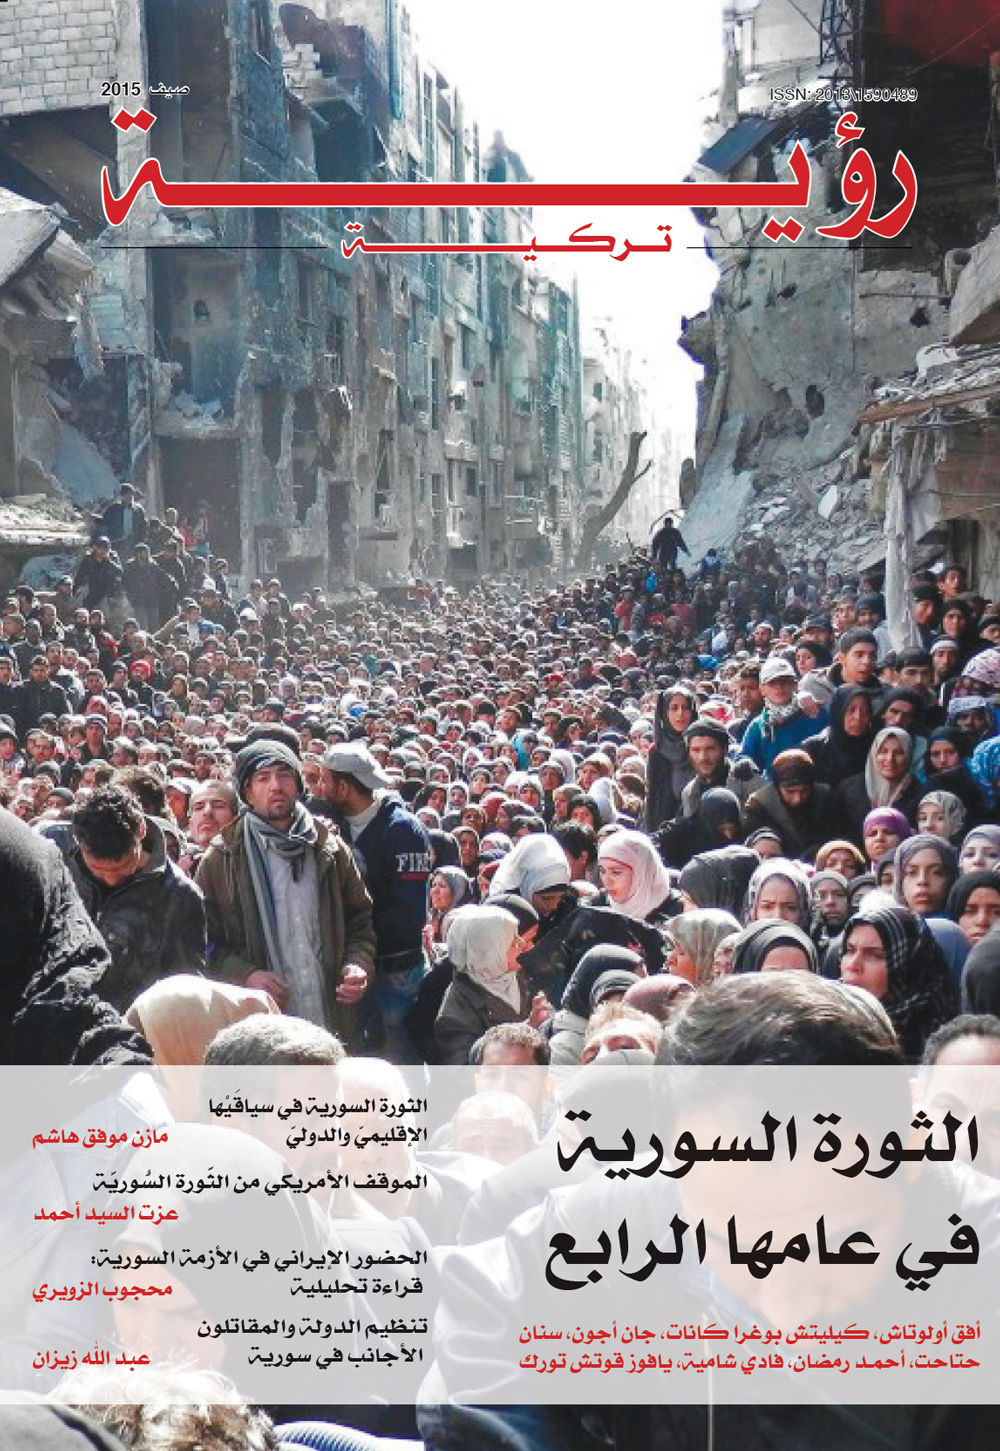 الثورة السورية في عامها الرابع